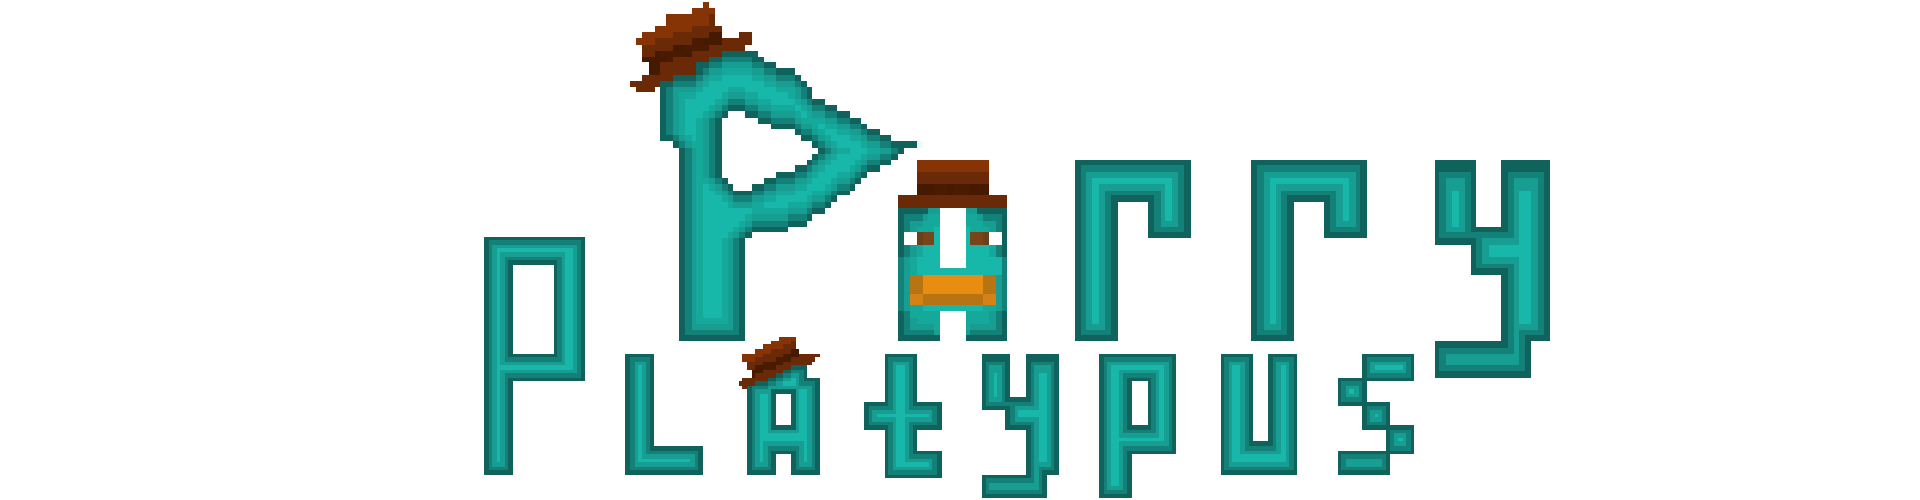 Perry Platypus Warden